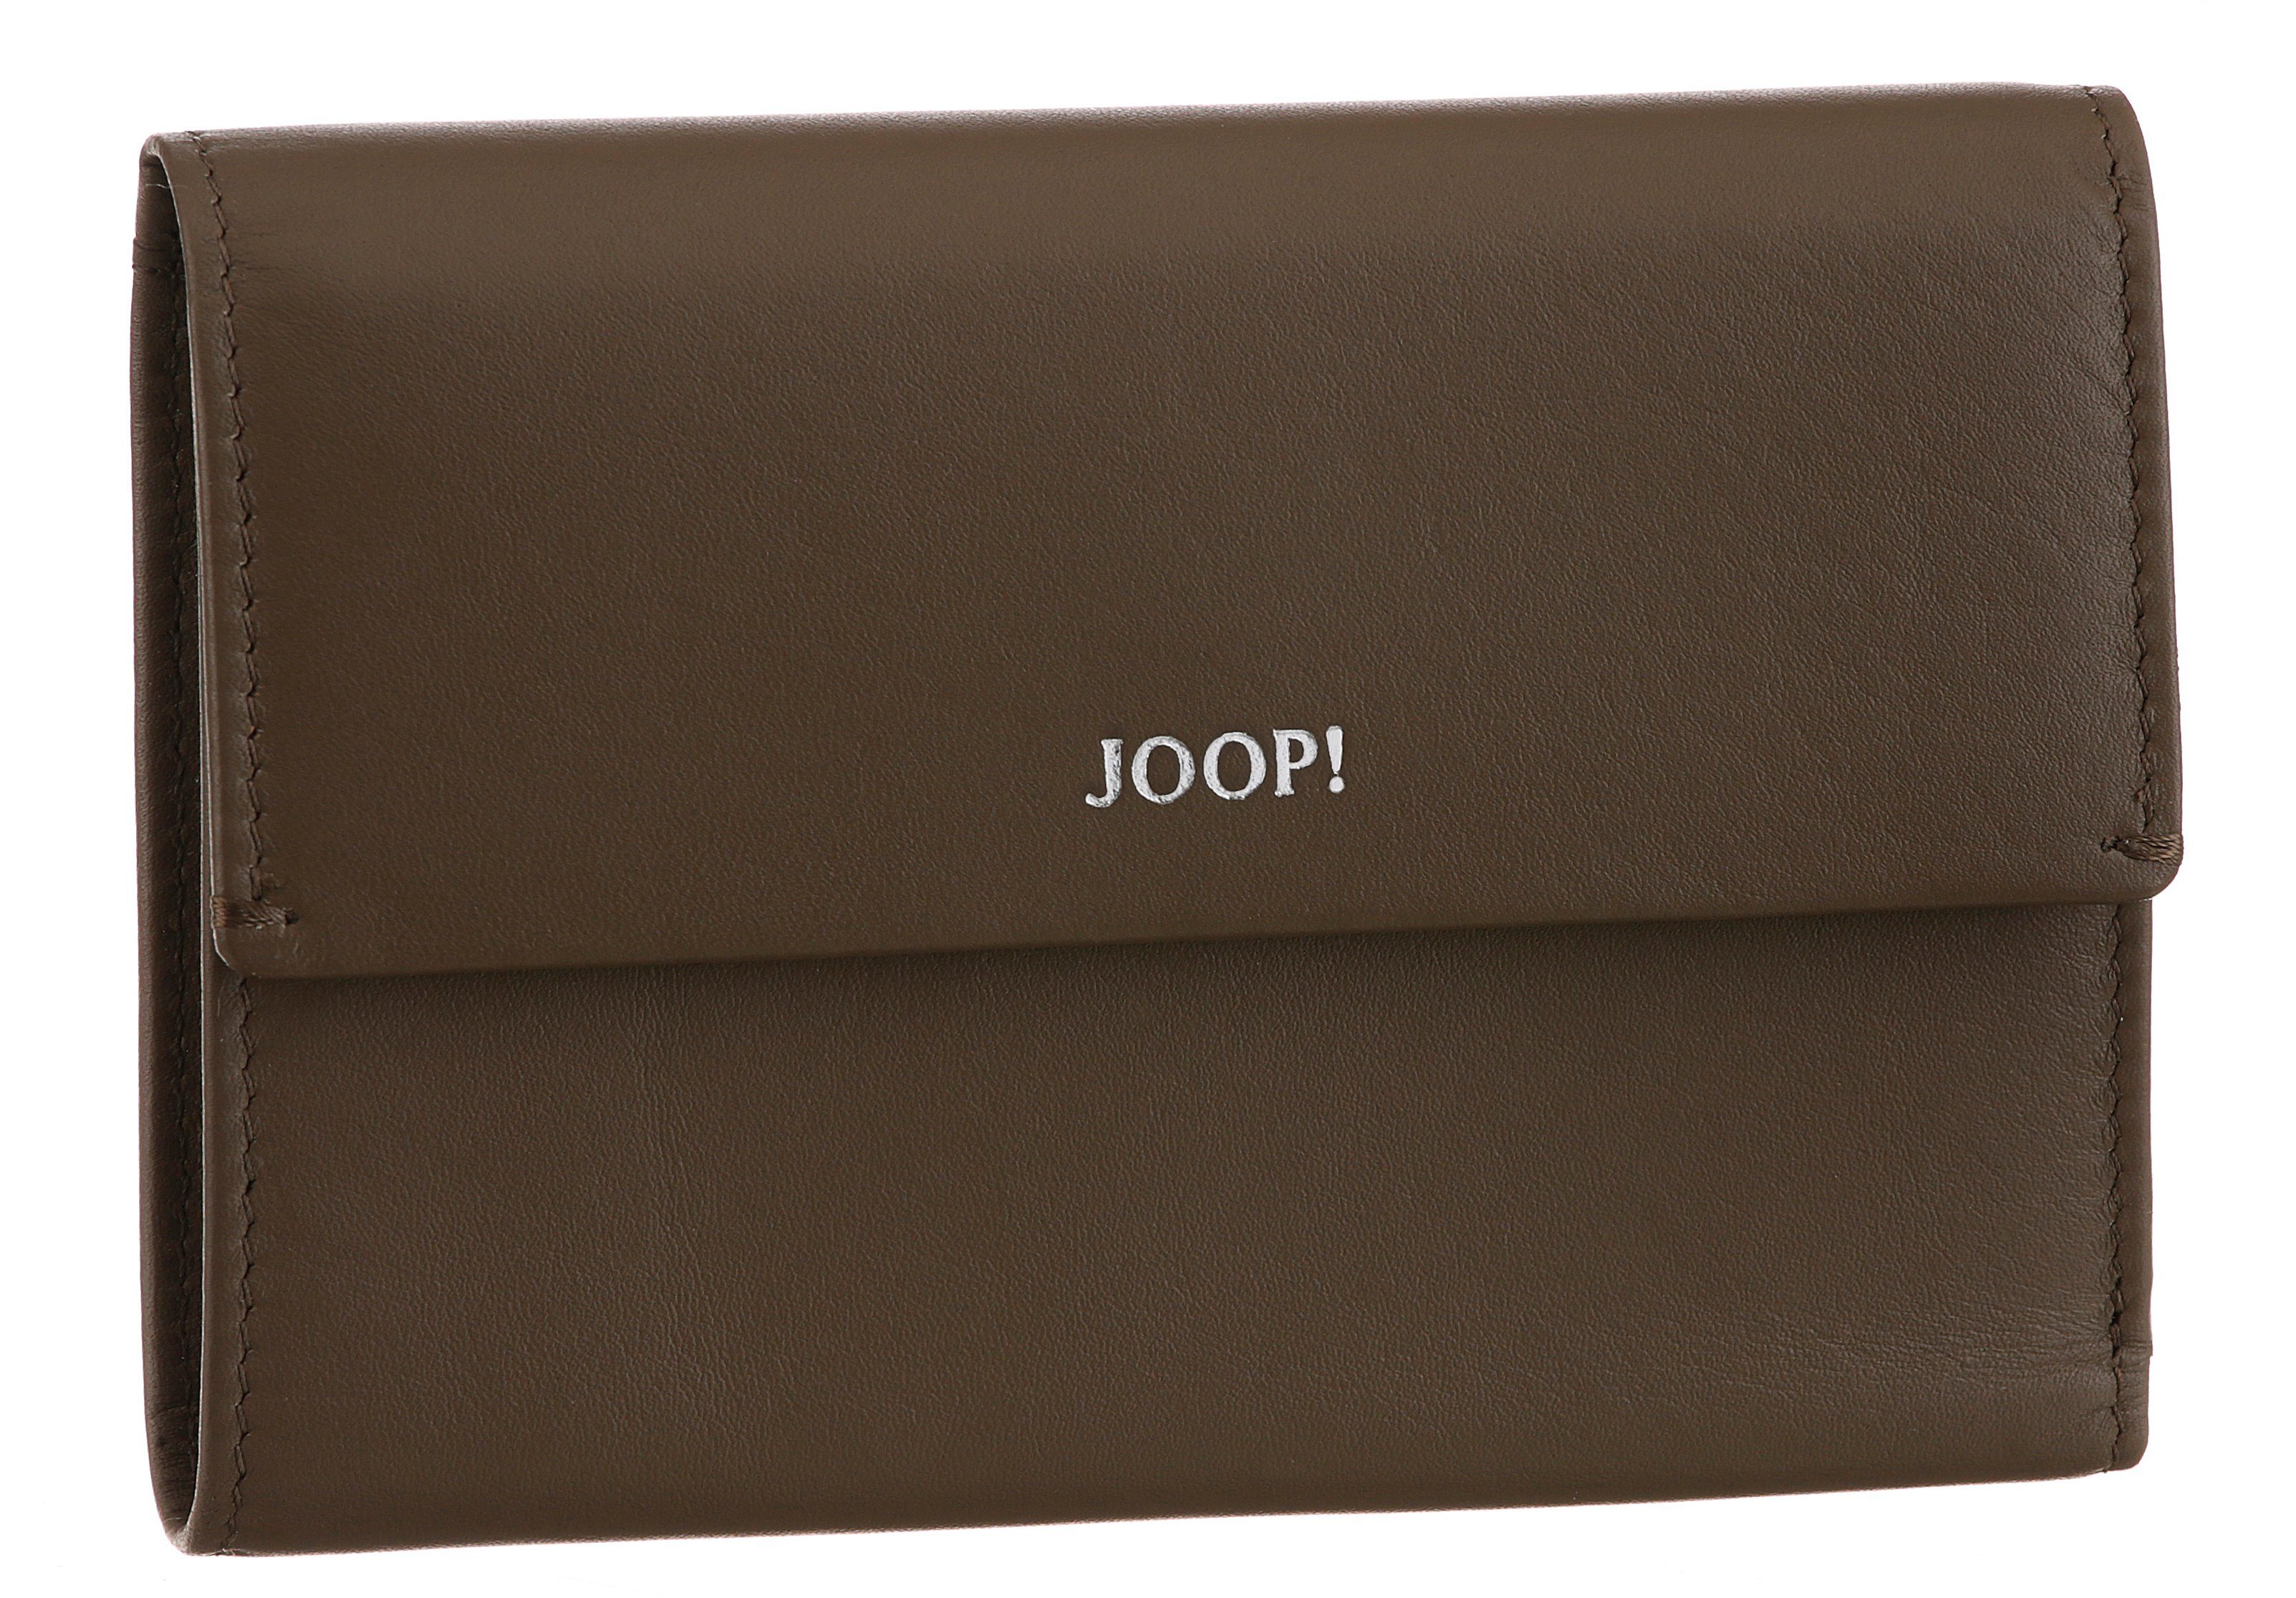 Joop! Geldbörse sofisticato 1.0 cosma purse mh10f, in schlichtem Design dunkelbraun